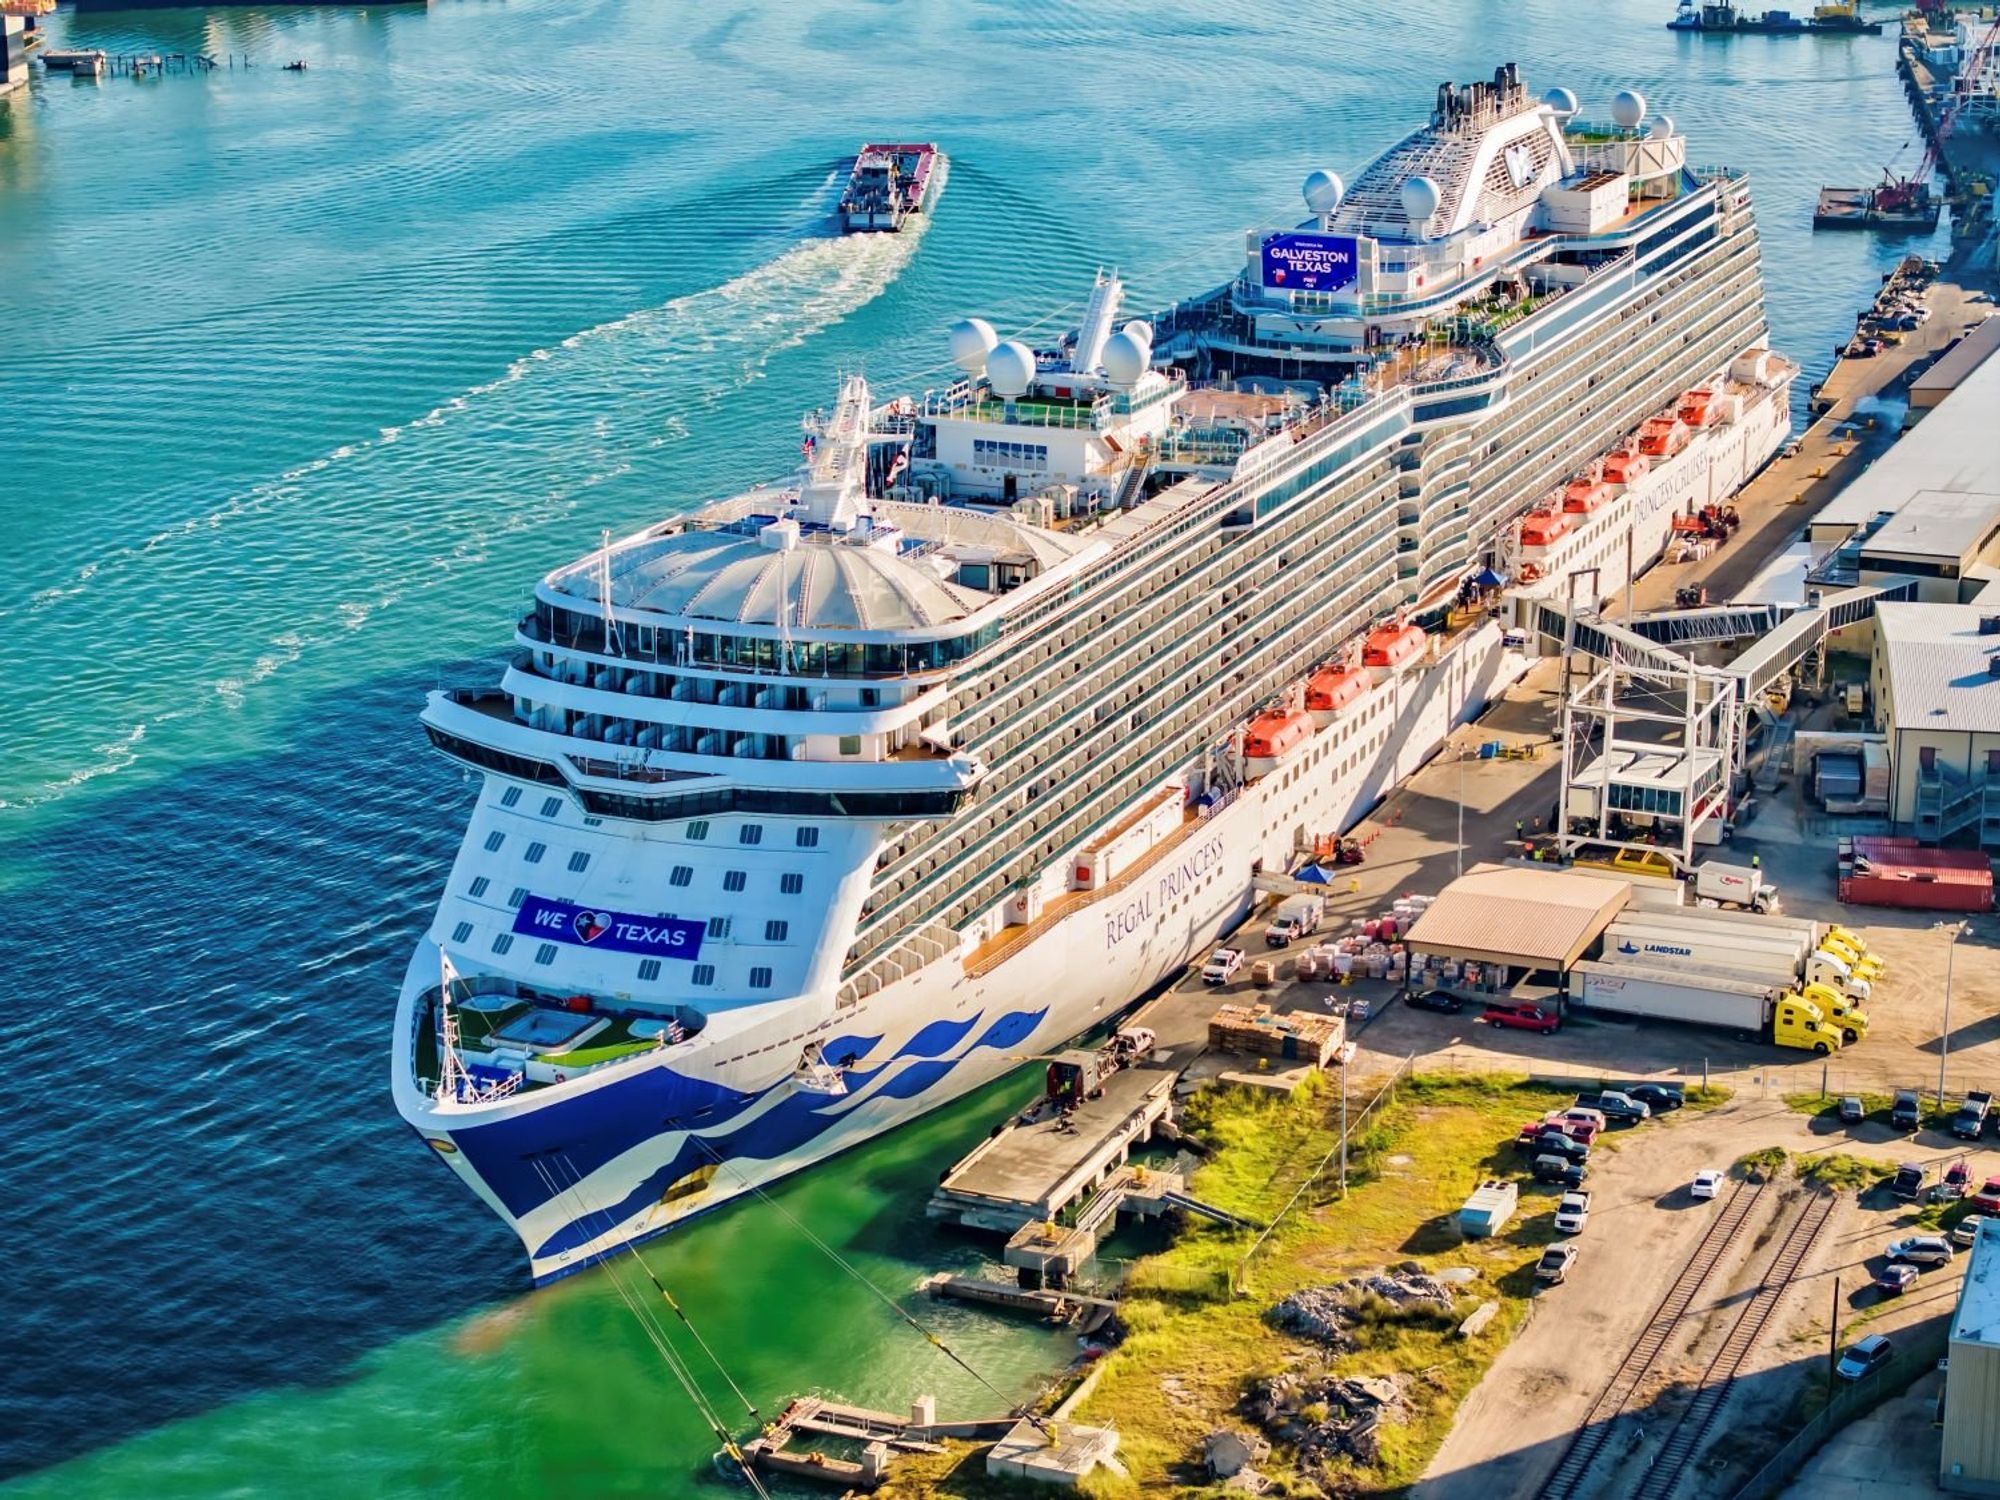 Princess Cruise ship in Galveston